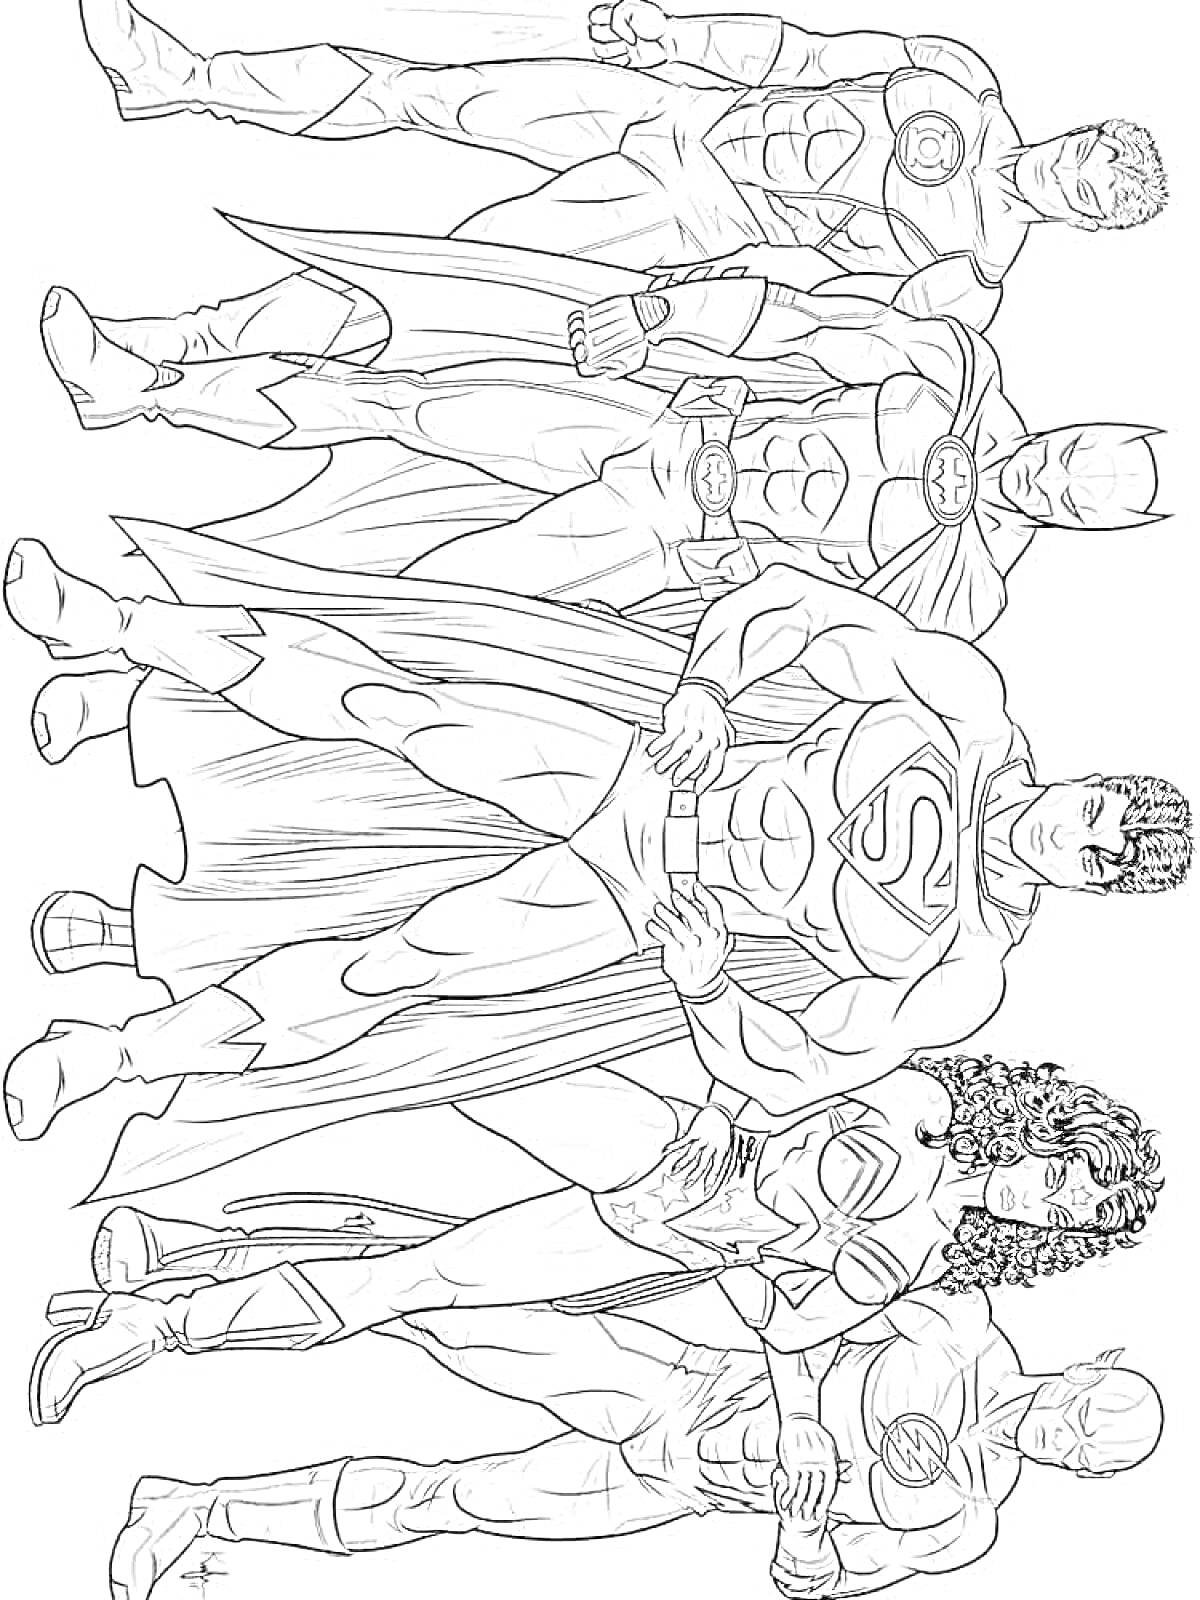 Лига Справедливости с пятью супергероями (Супермен, Бэтмен, Чудо-женщина, Зелёный Фонарь, Флэш)